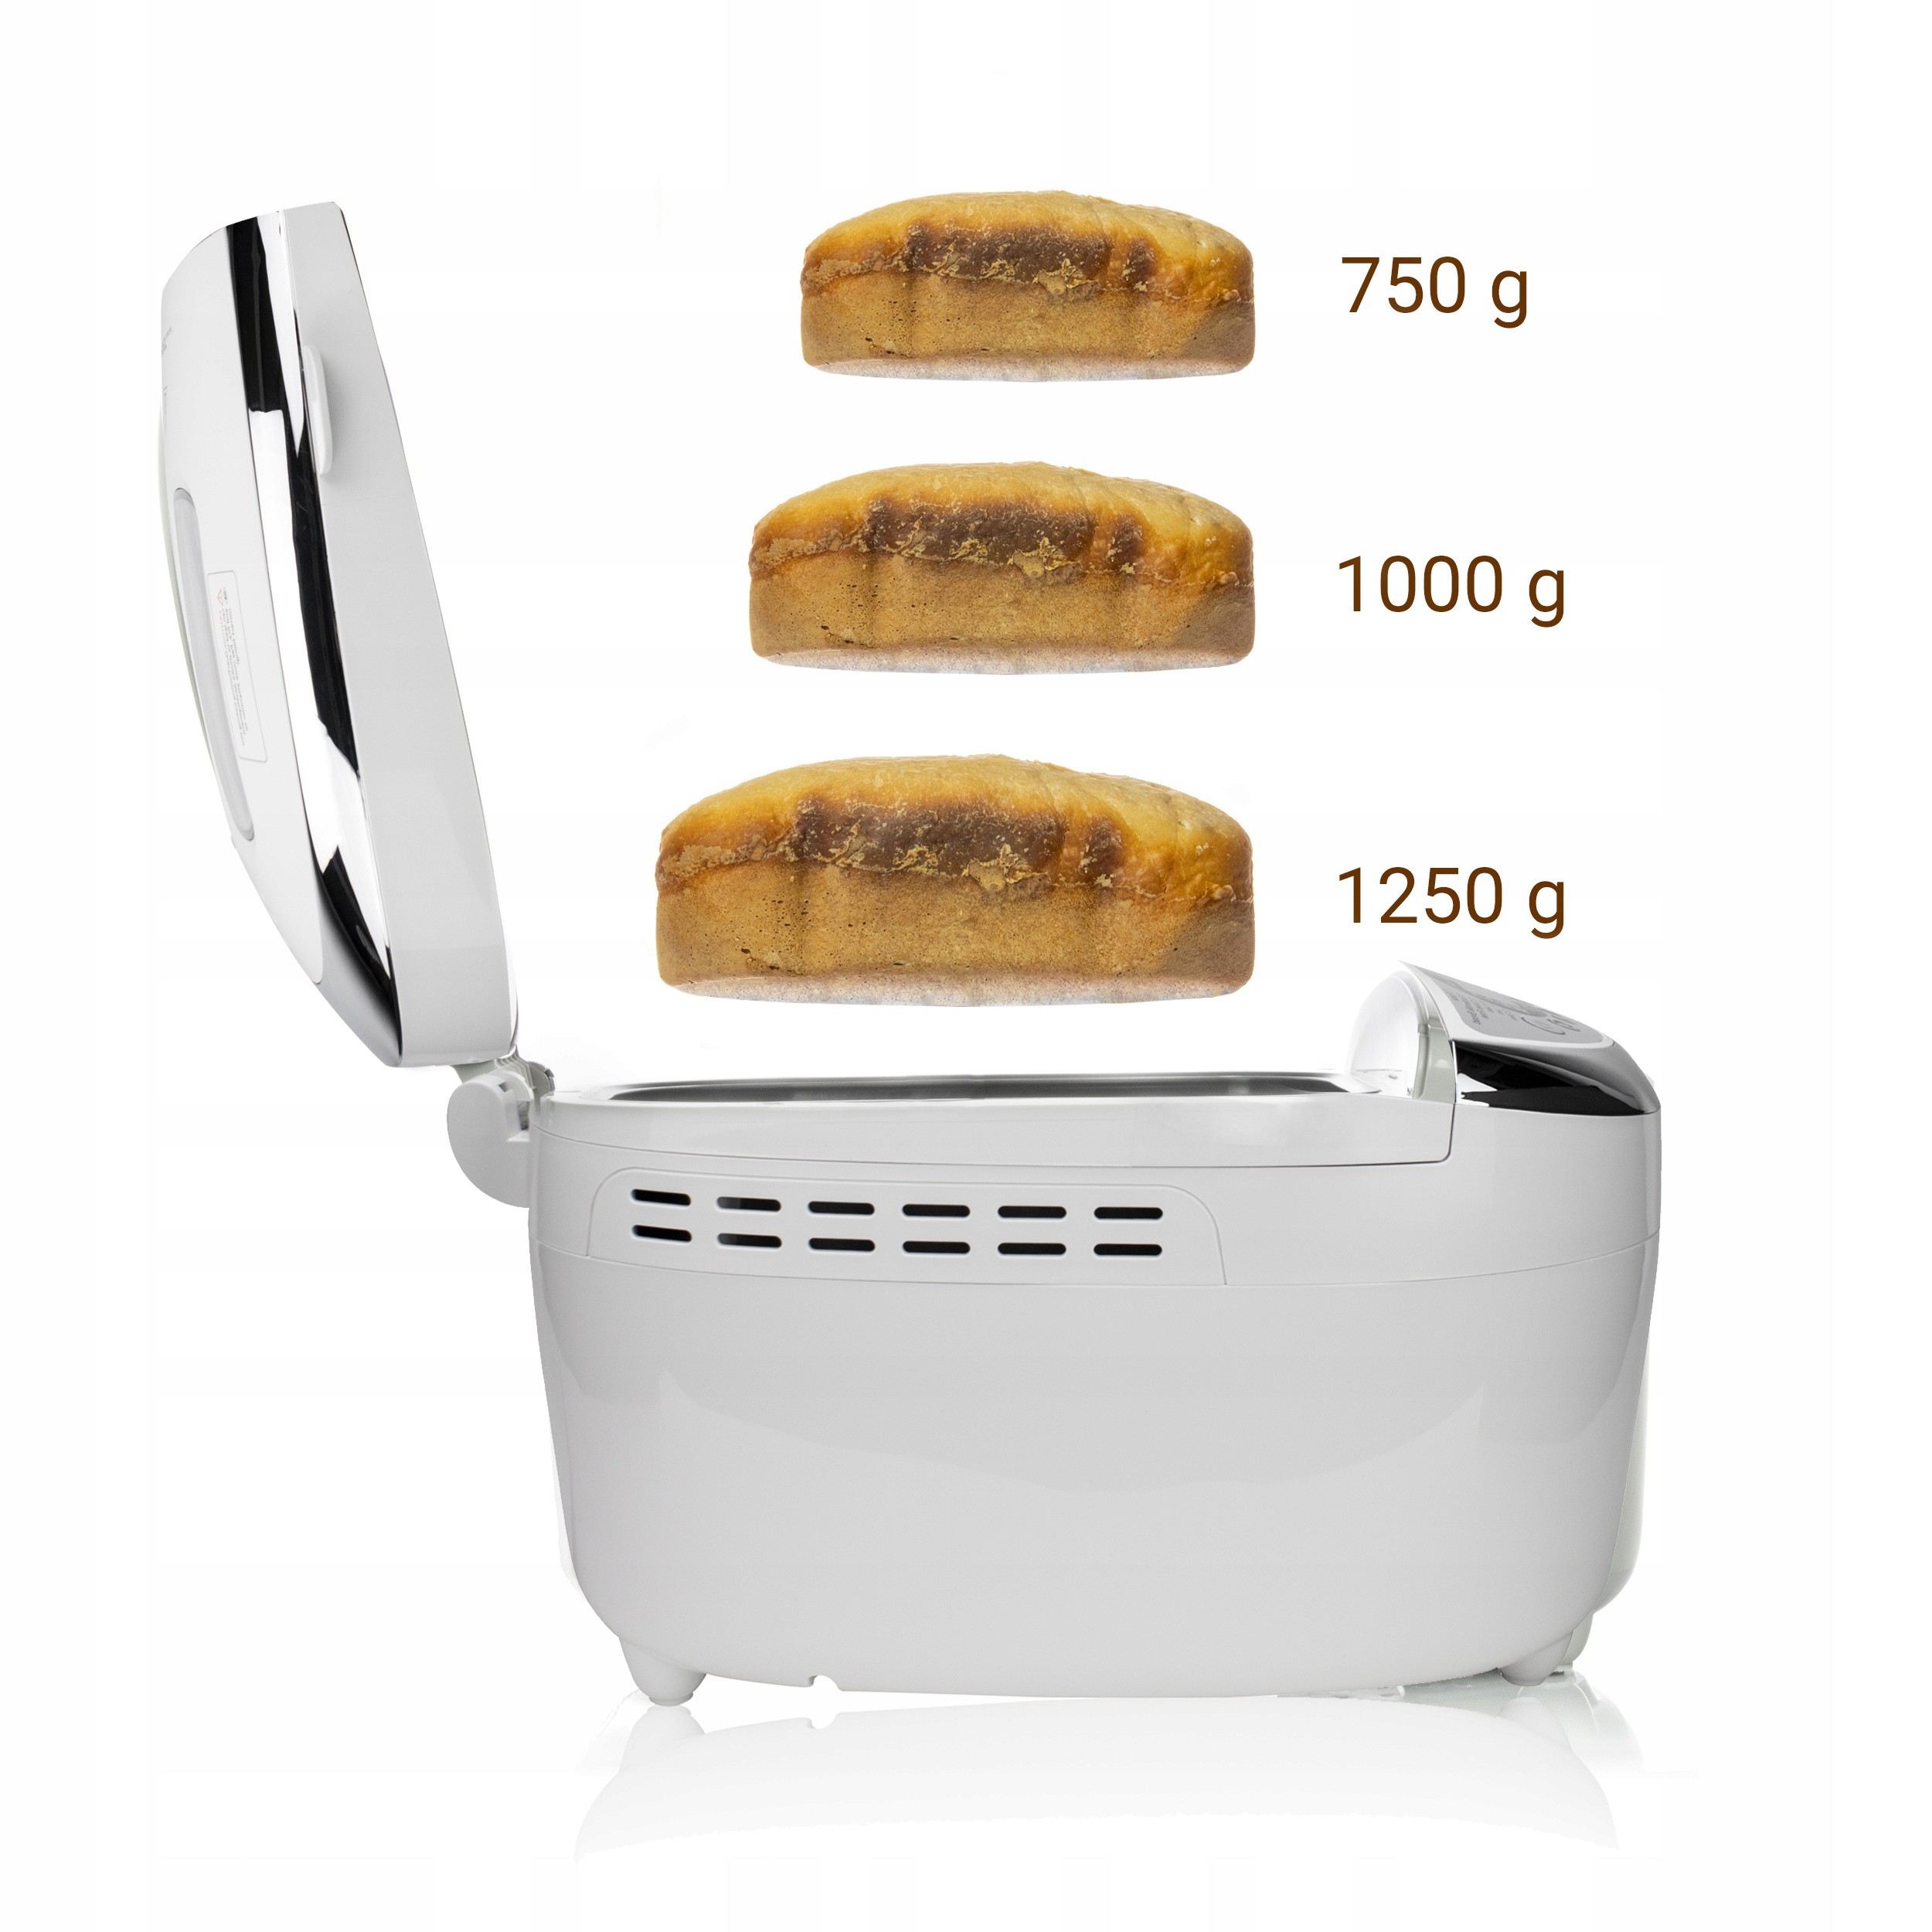 Wypiekacz do chleba automat 12 PROG. FIRST AUSTRIA